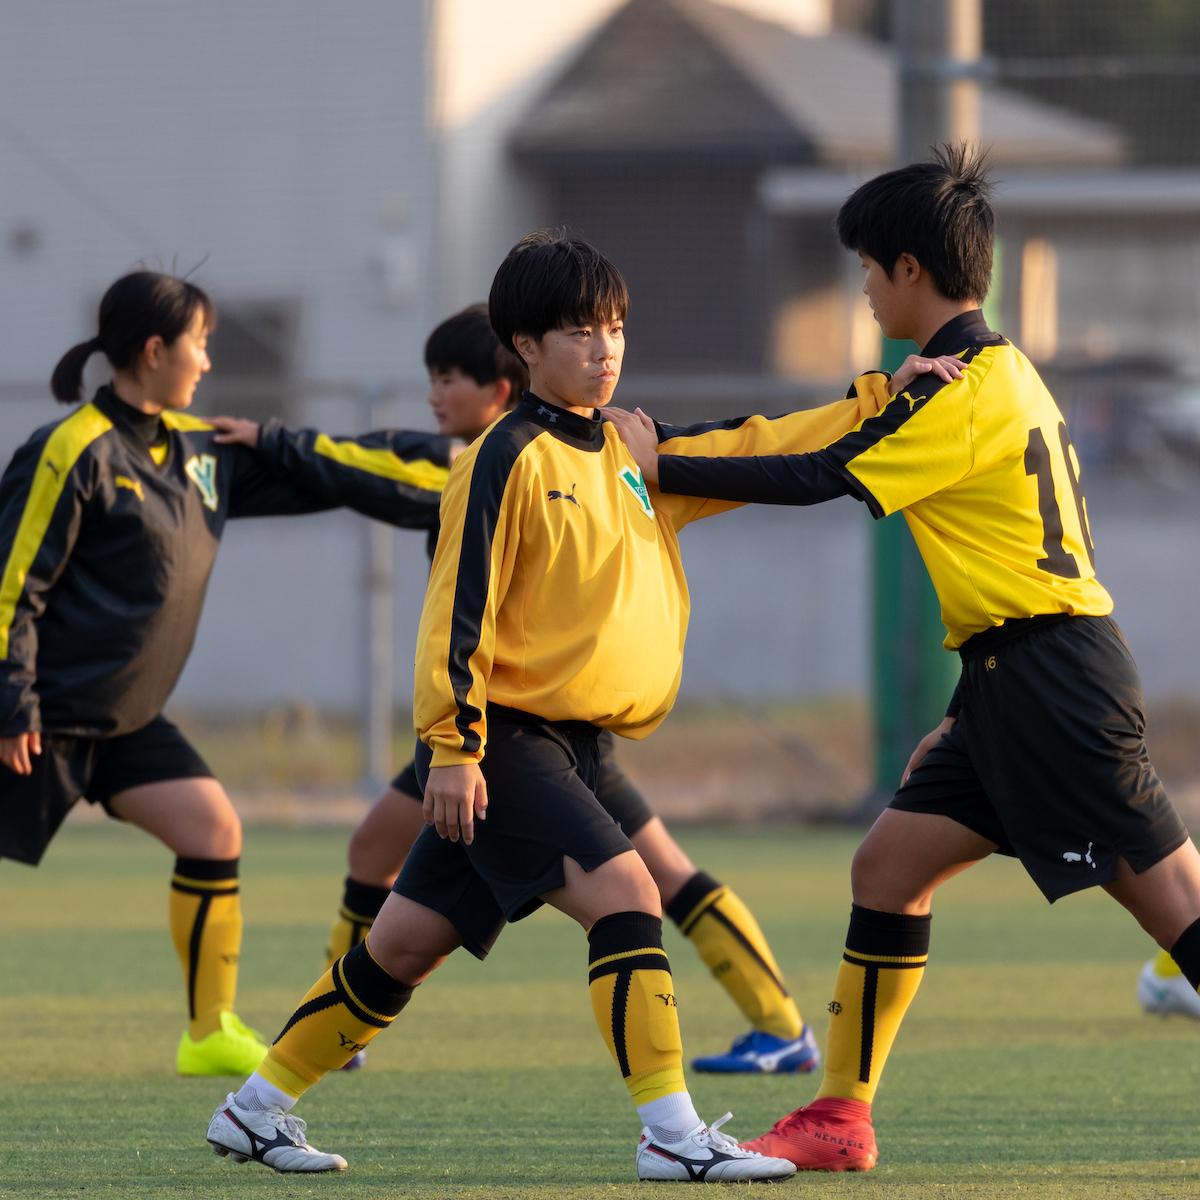 コロナ禍の高校３年生たち 女子サッカー 加藤明星 柳ケ浦 大分の女子サッカー を盛り上げたい オー エス Oita Sports